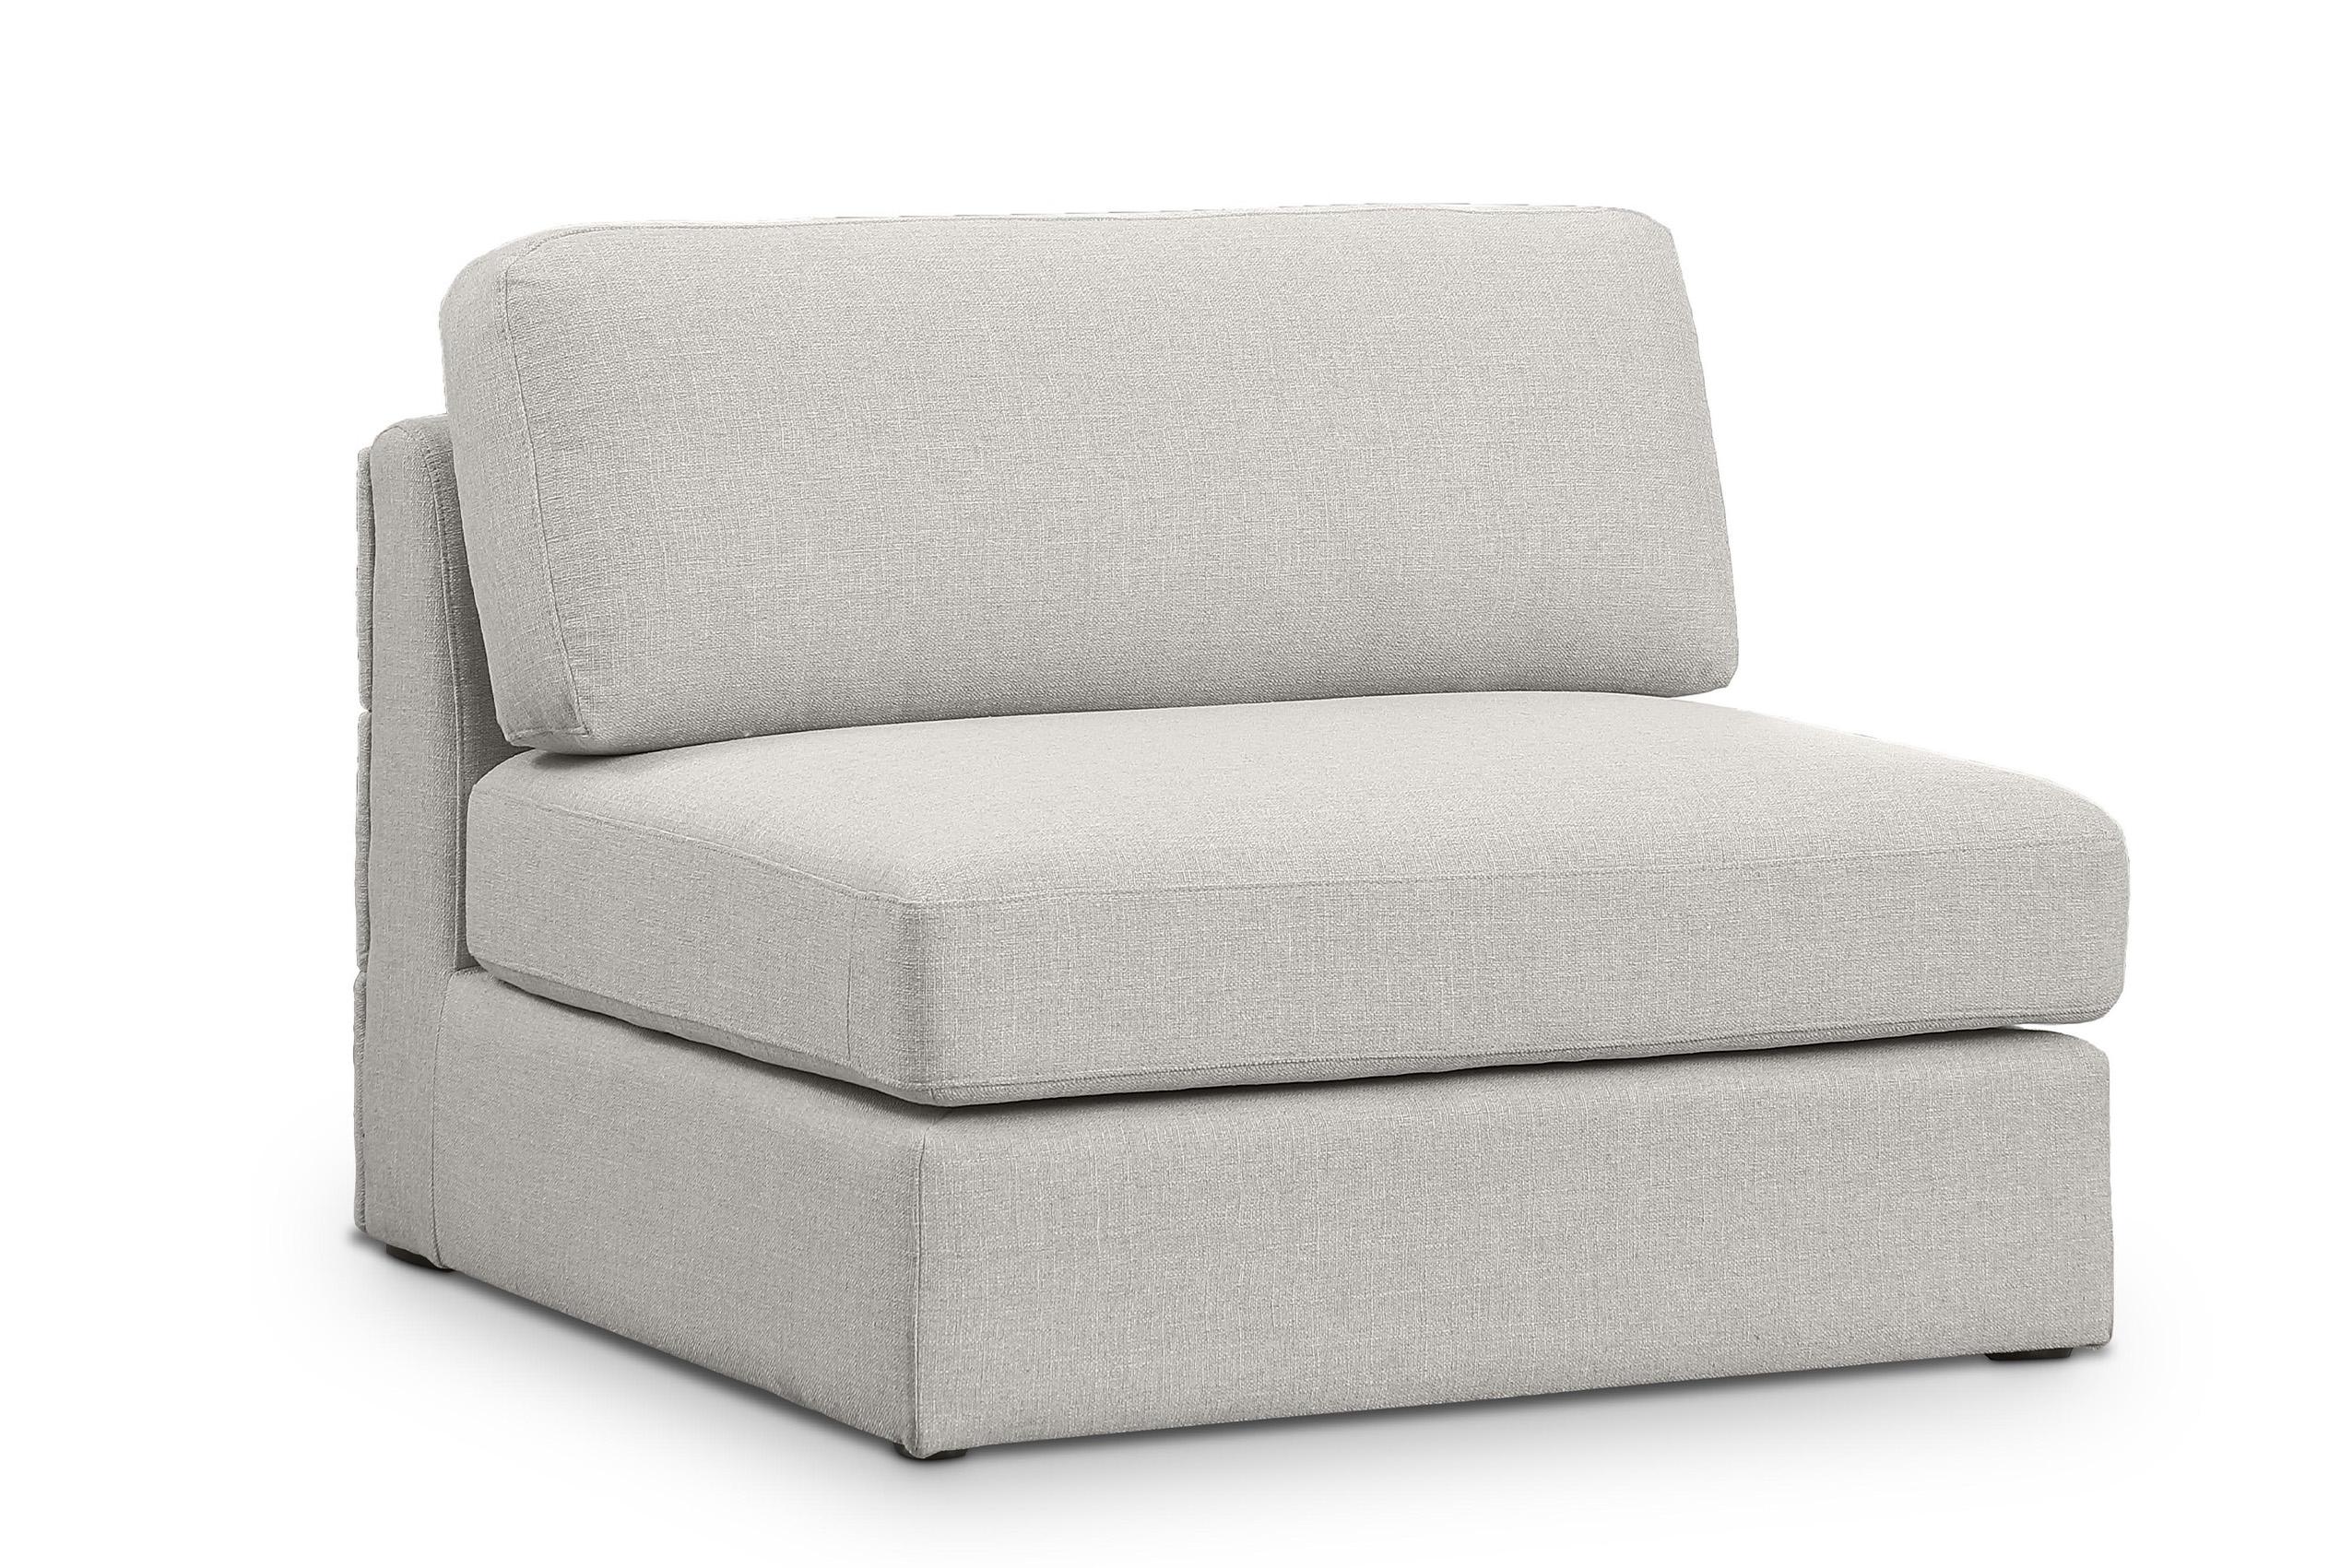 Contemporary, Modern Armless Chair BECKHAM 681Beige-Armless 681Beige-Armless in Beige Linen